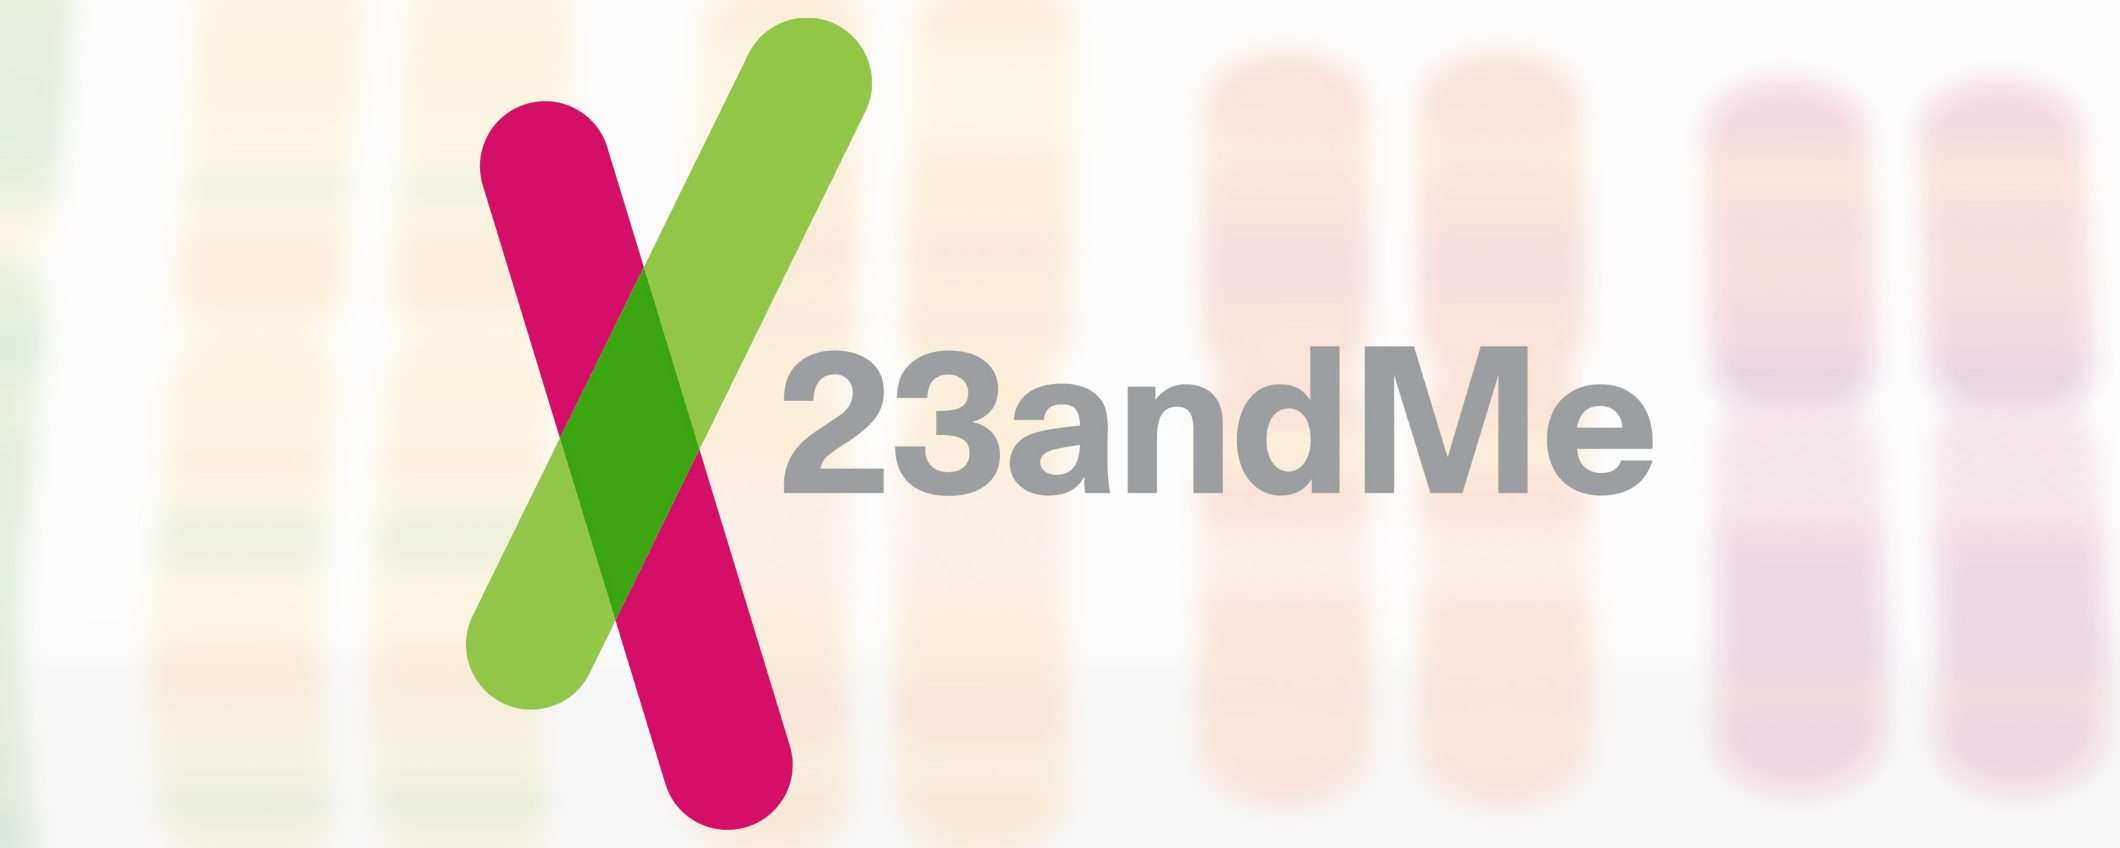 23andMe: intrusione non rilevata per 5 mesi